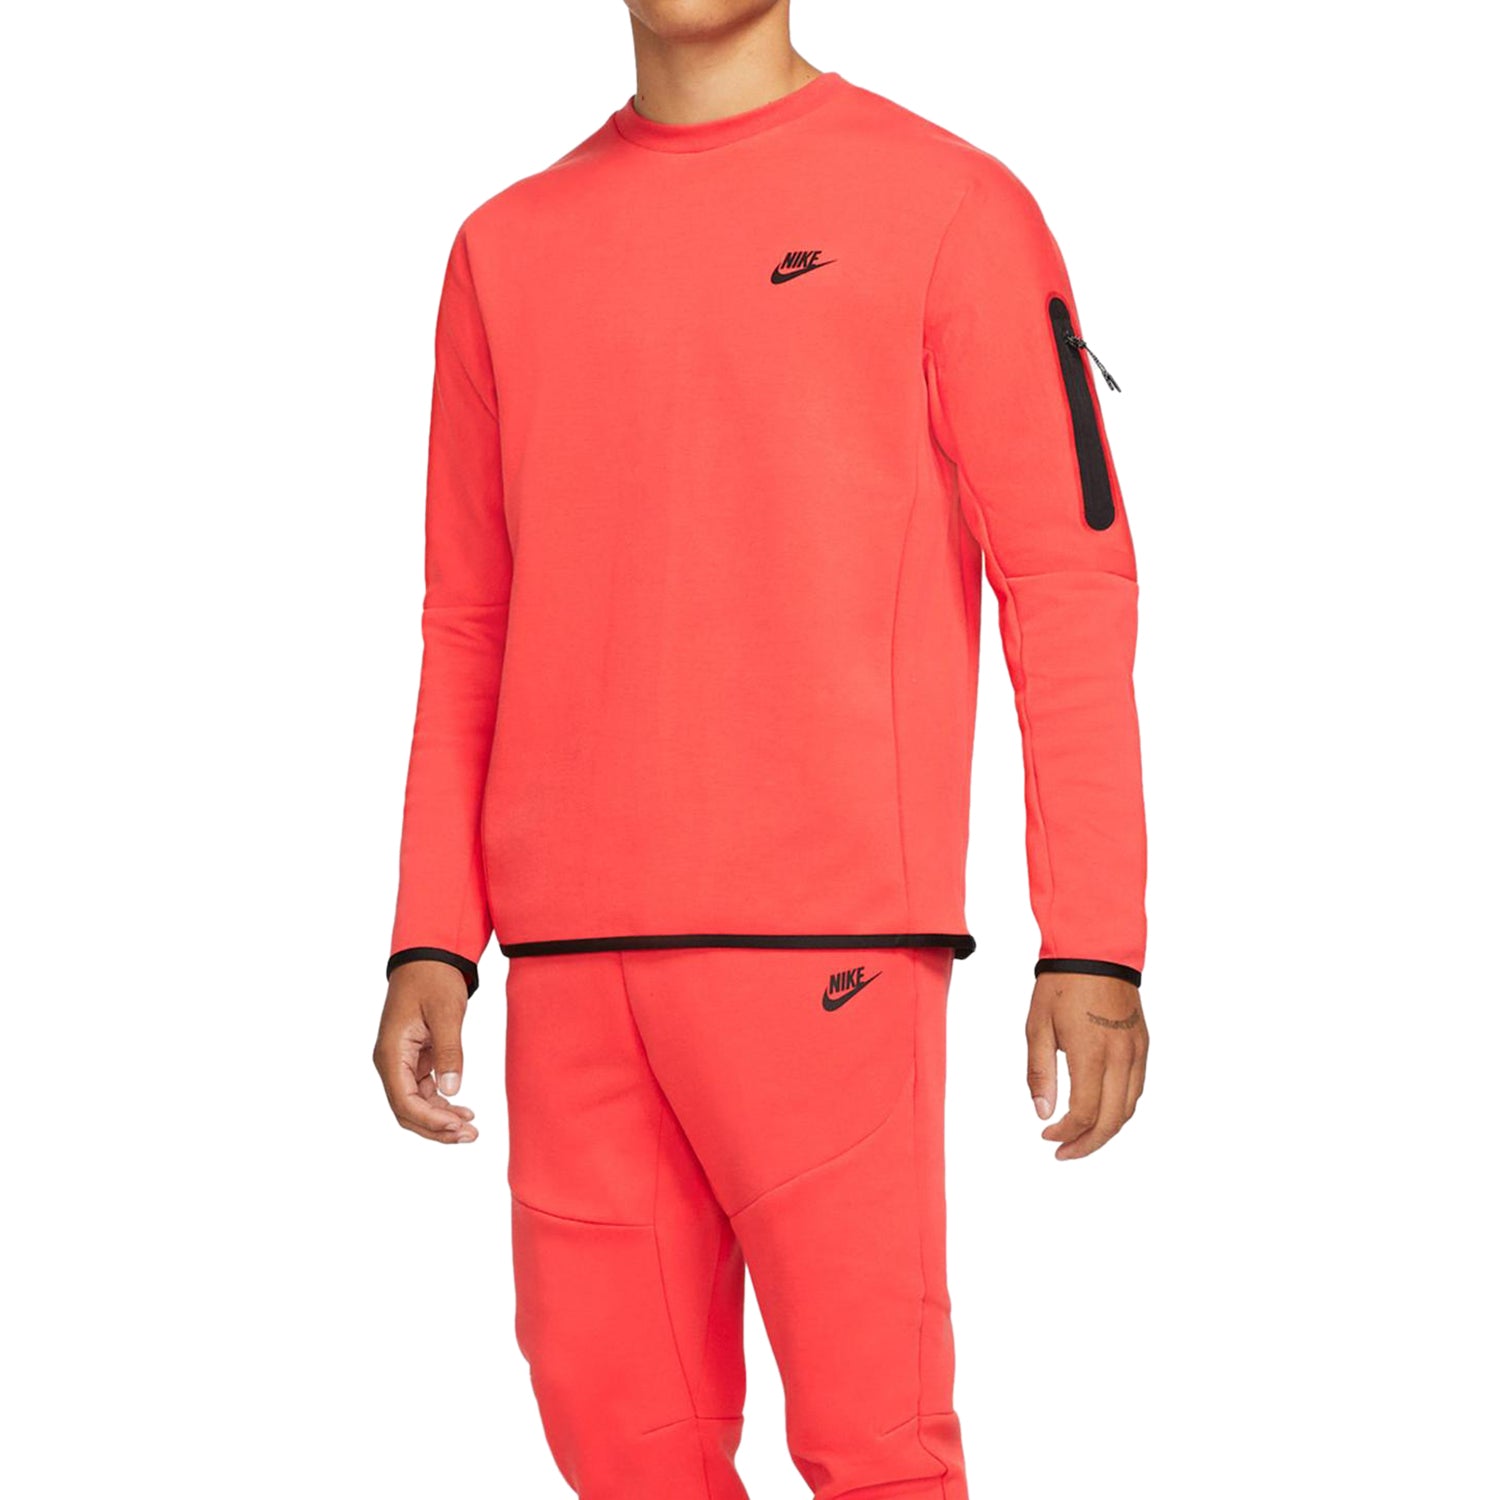 Nike Sportswear Tech Fleece Crewneck Sweatshirt Mens Style : Cu4505